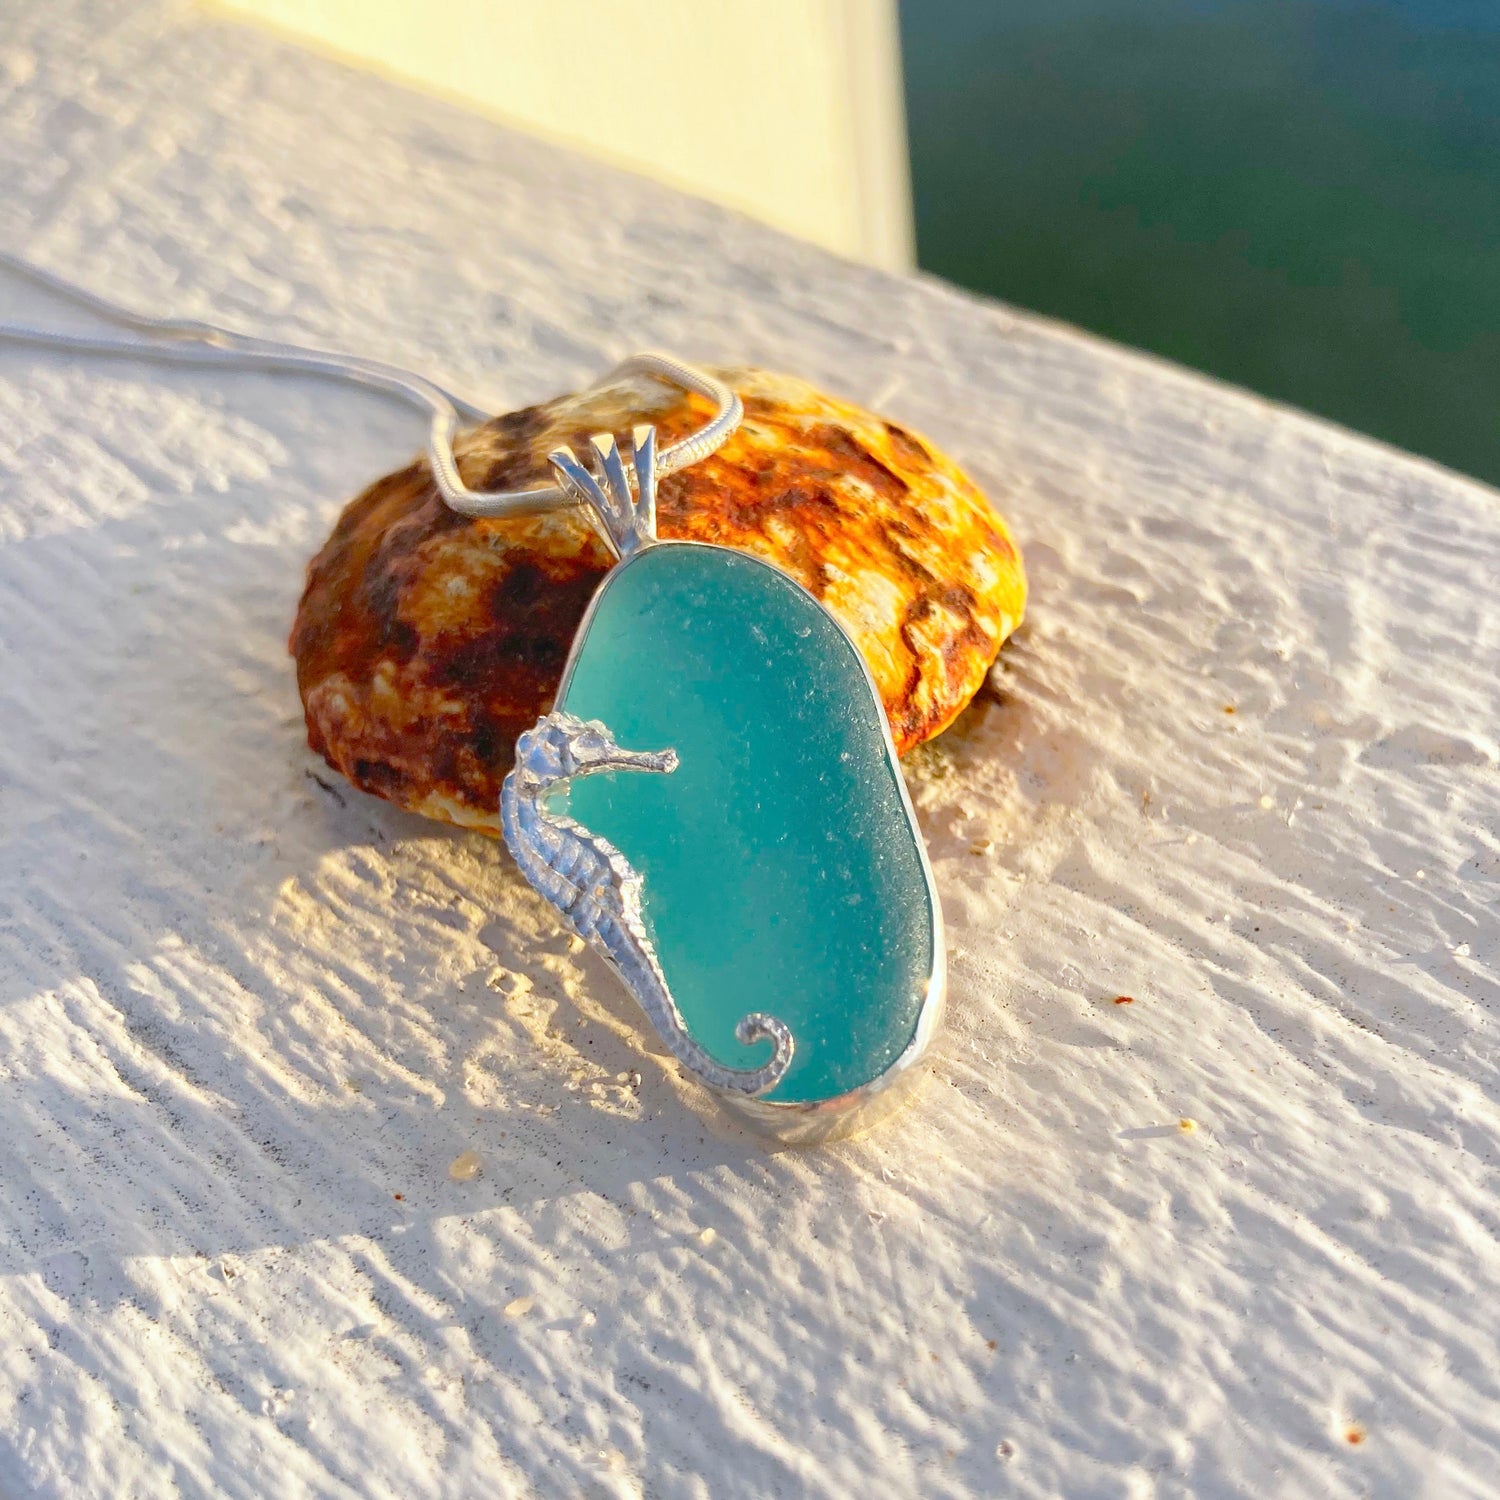 Aqua sea glass pendant with a seahorse by Mornington Sea Glass. Photographed on a pier on the Mornington Peninsula, Victoria, Australia.